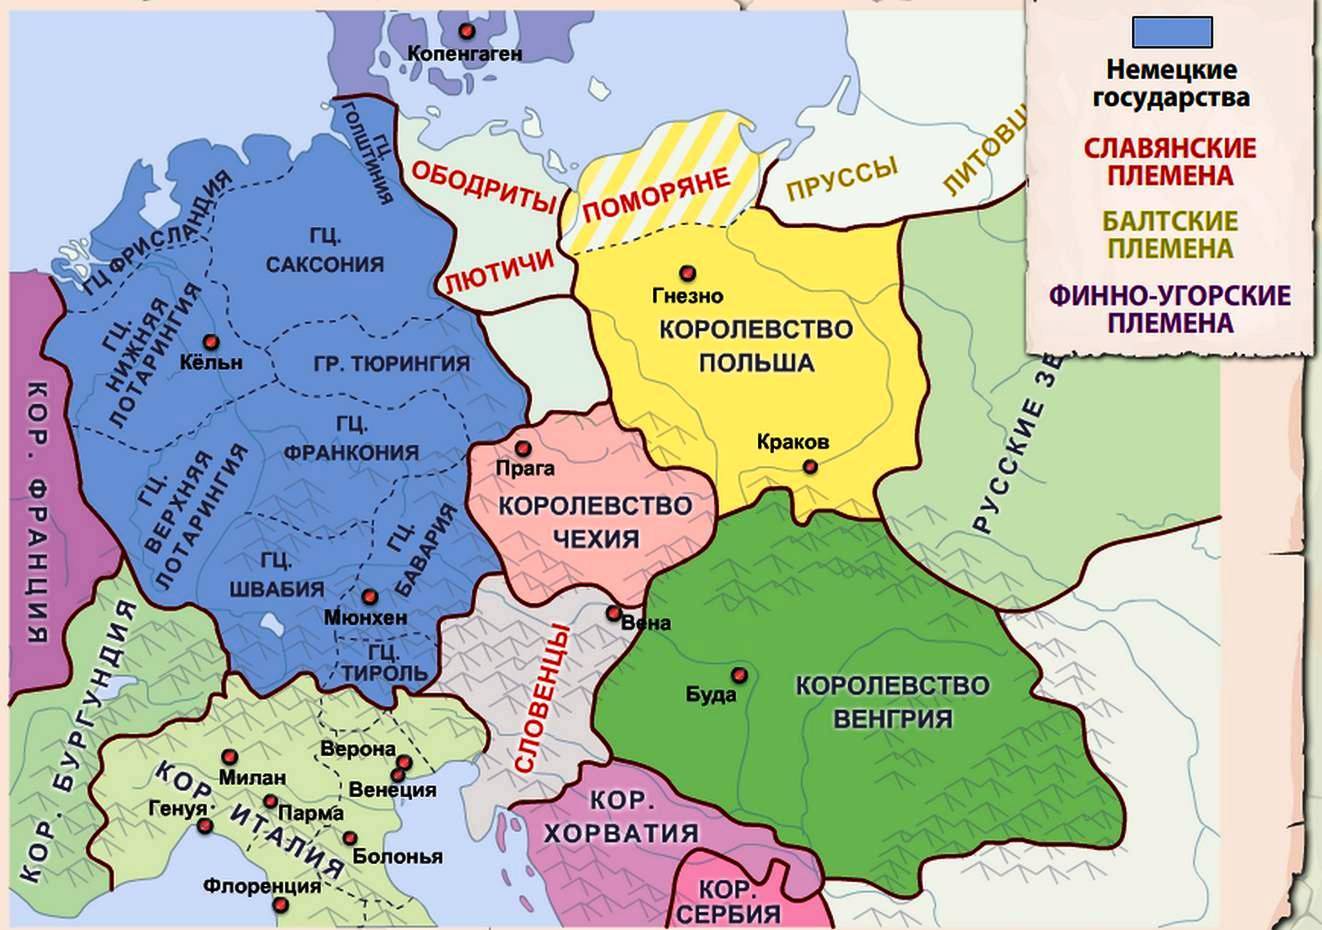 Год образования польши. Территория полишм в 11 веке. Территория Германии в 11-13 веках. Славянские земли в Германии. Германское королевство средние века.